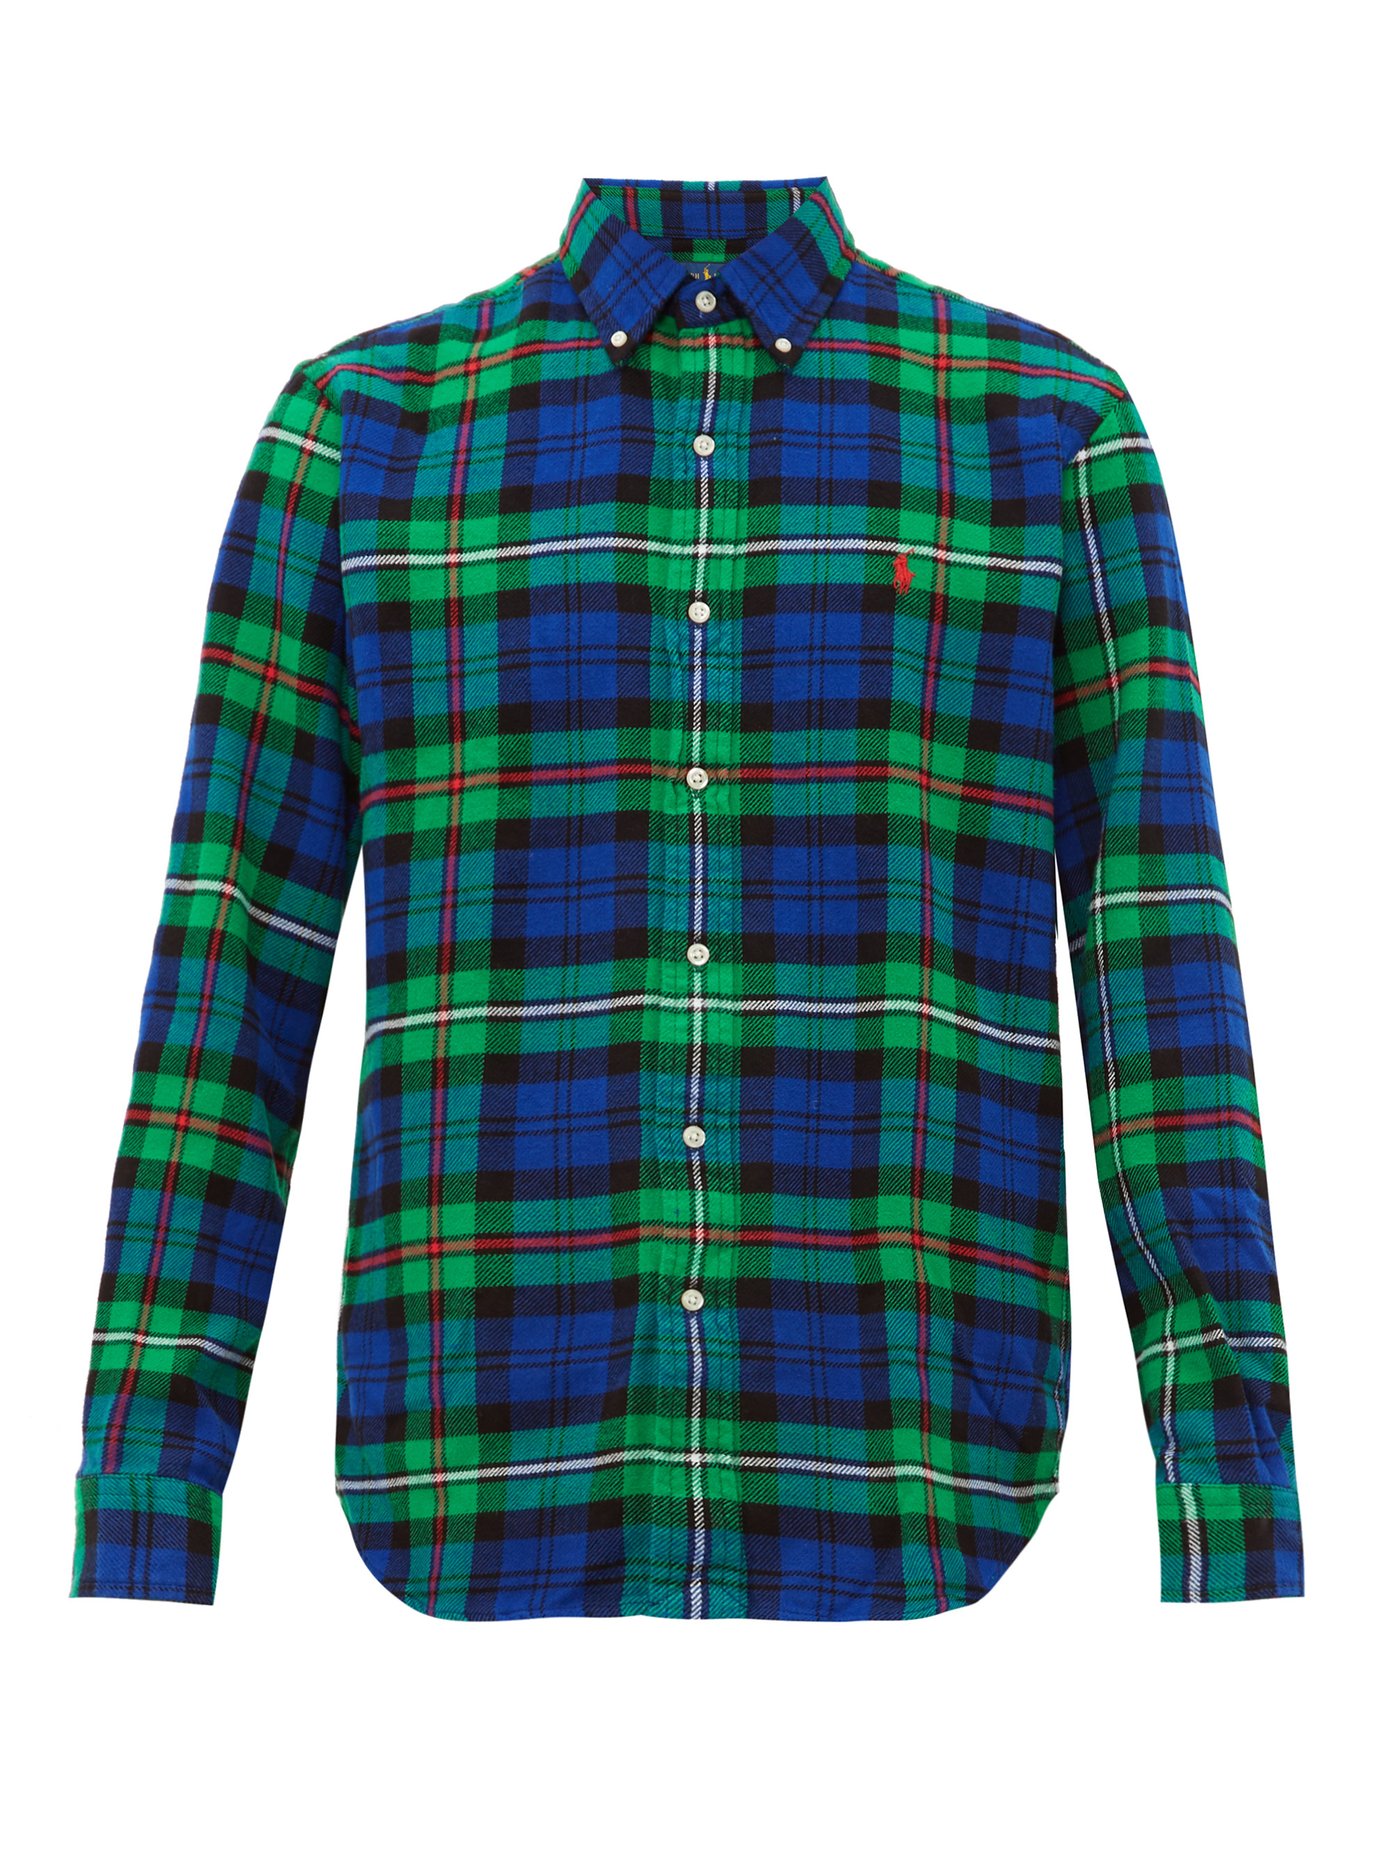 polo ralph lauren flannel shirt